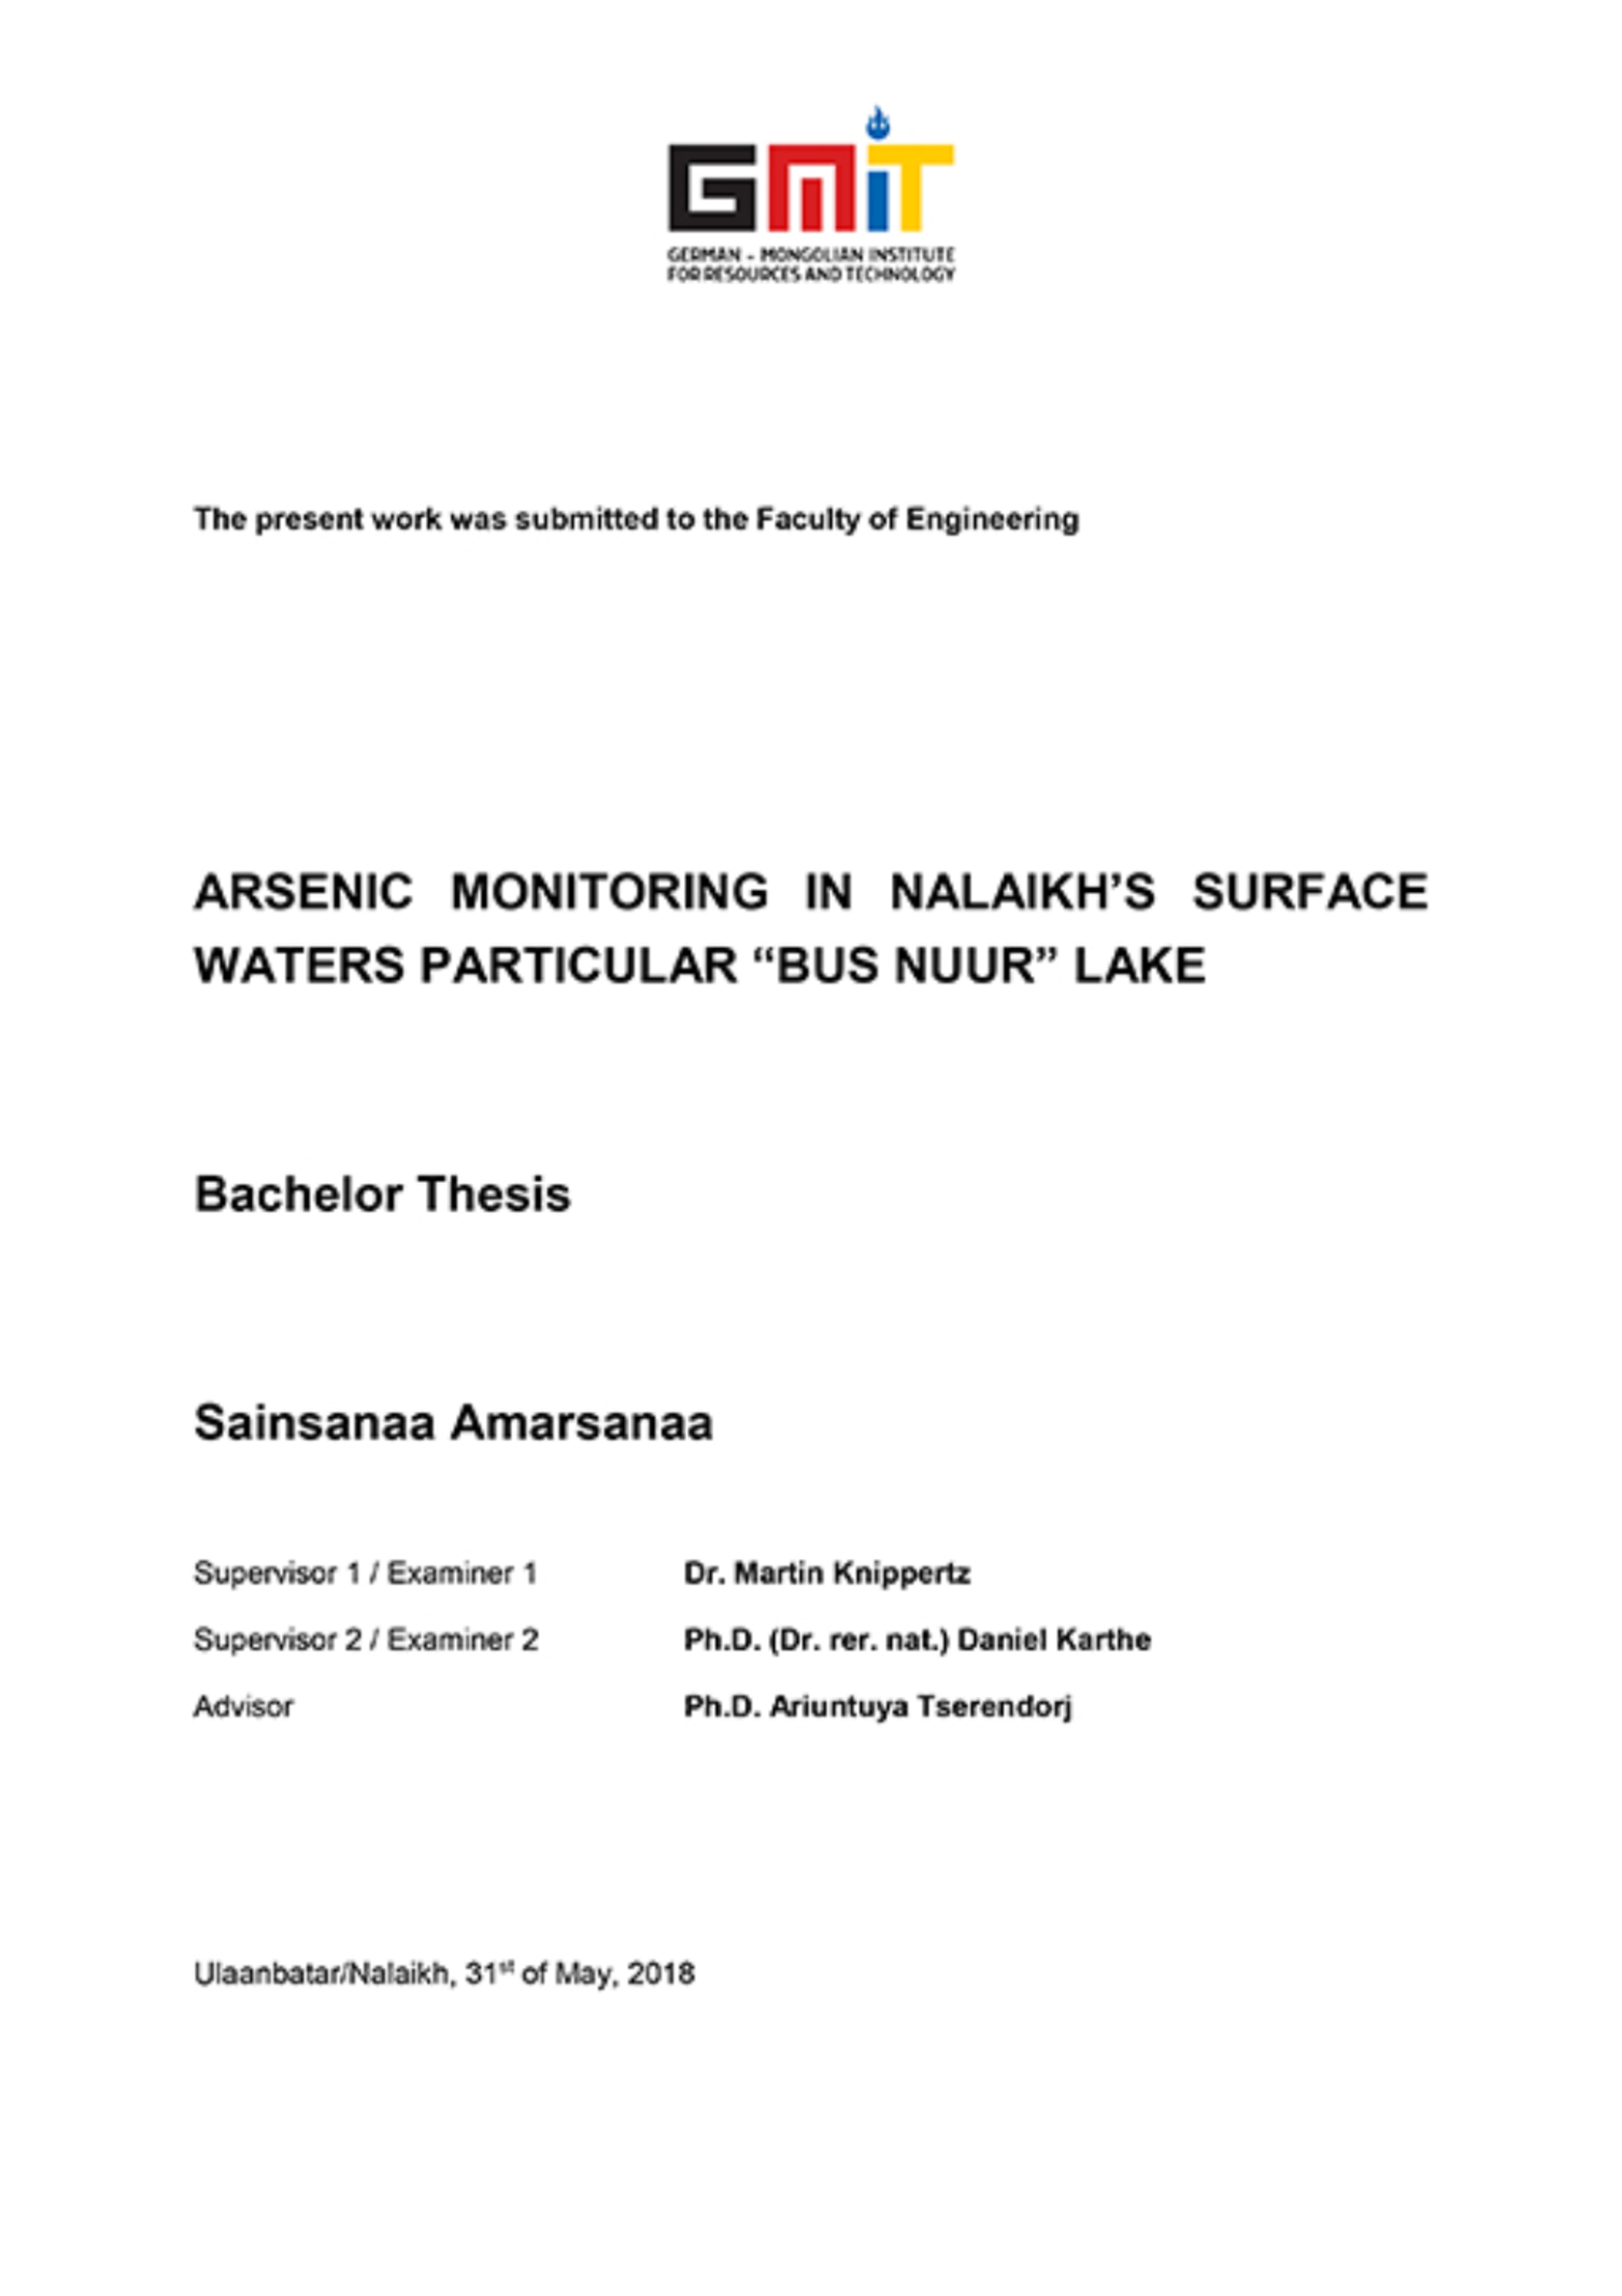  Arsenic monitoring in Nalaikh’s surface waters particular “bus nuur” lake